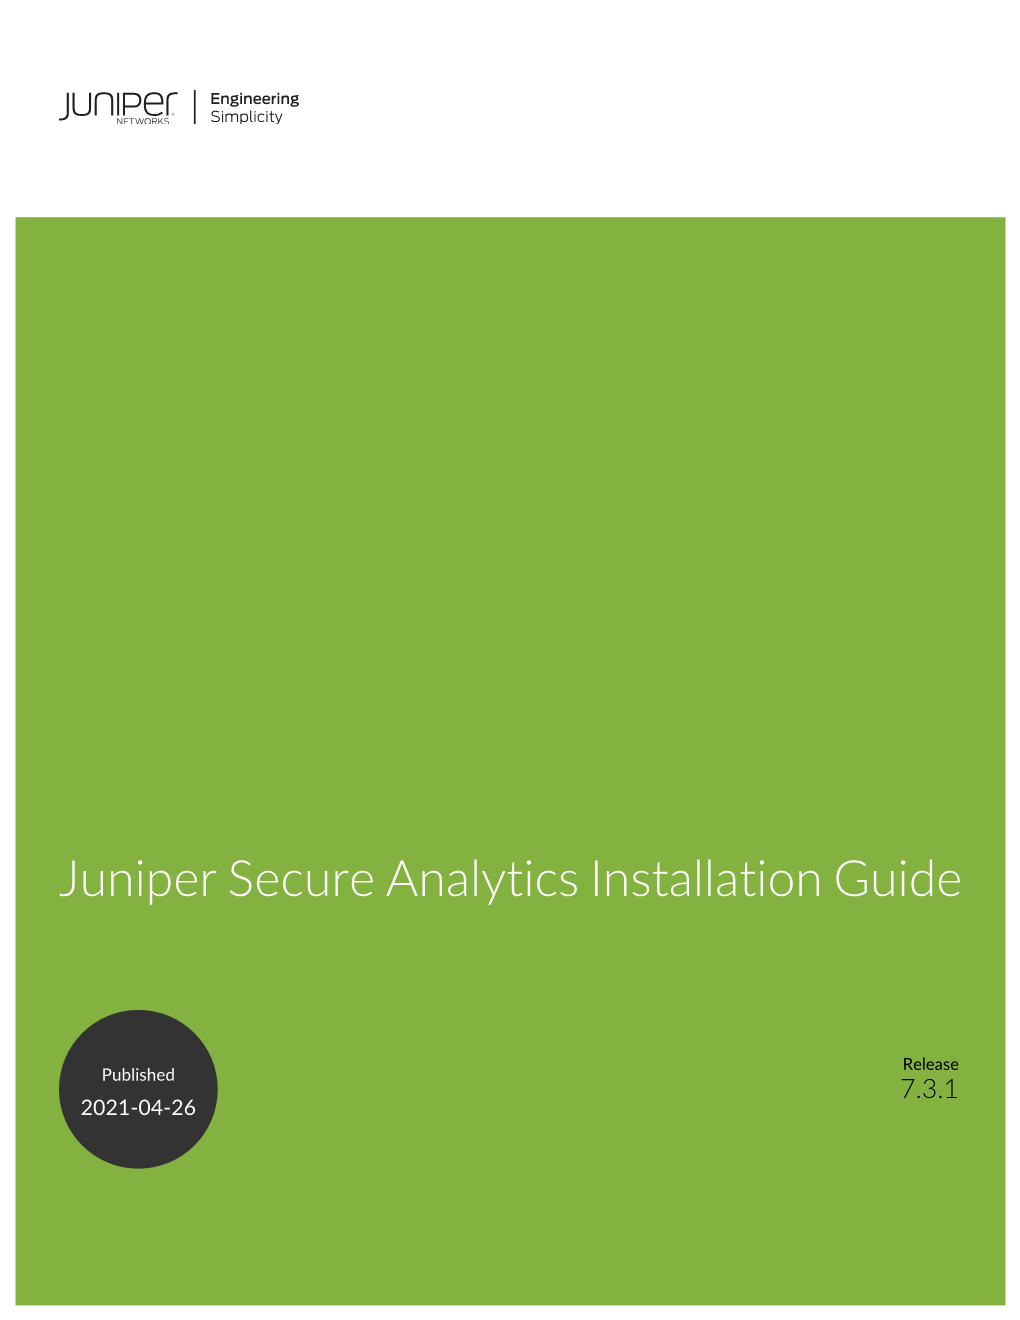 Juniper Secure Analytics Installation Guide